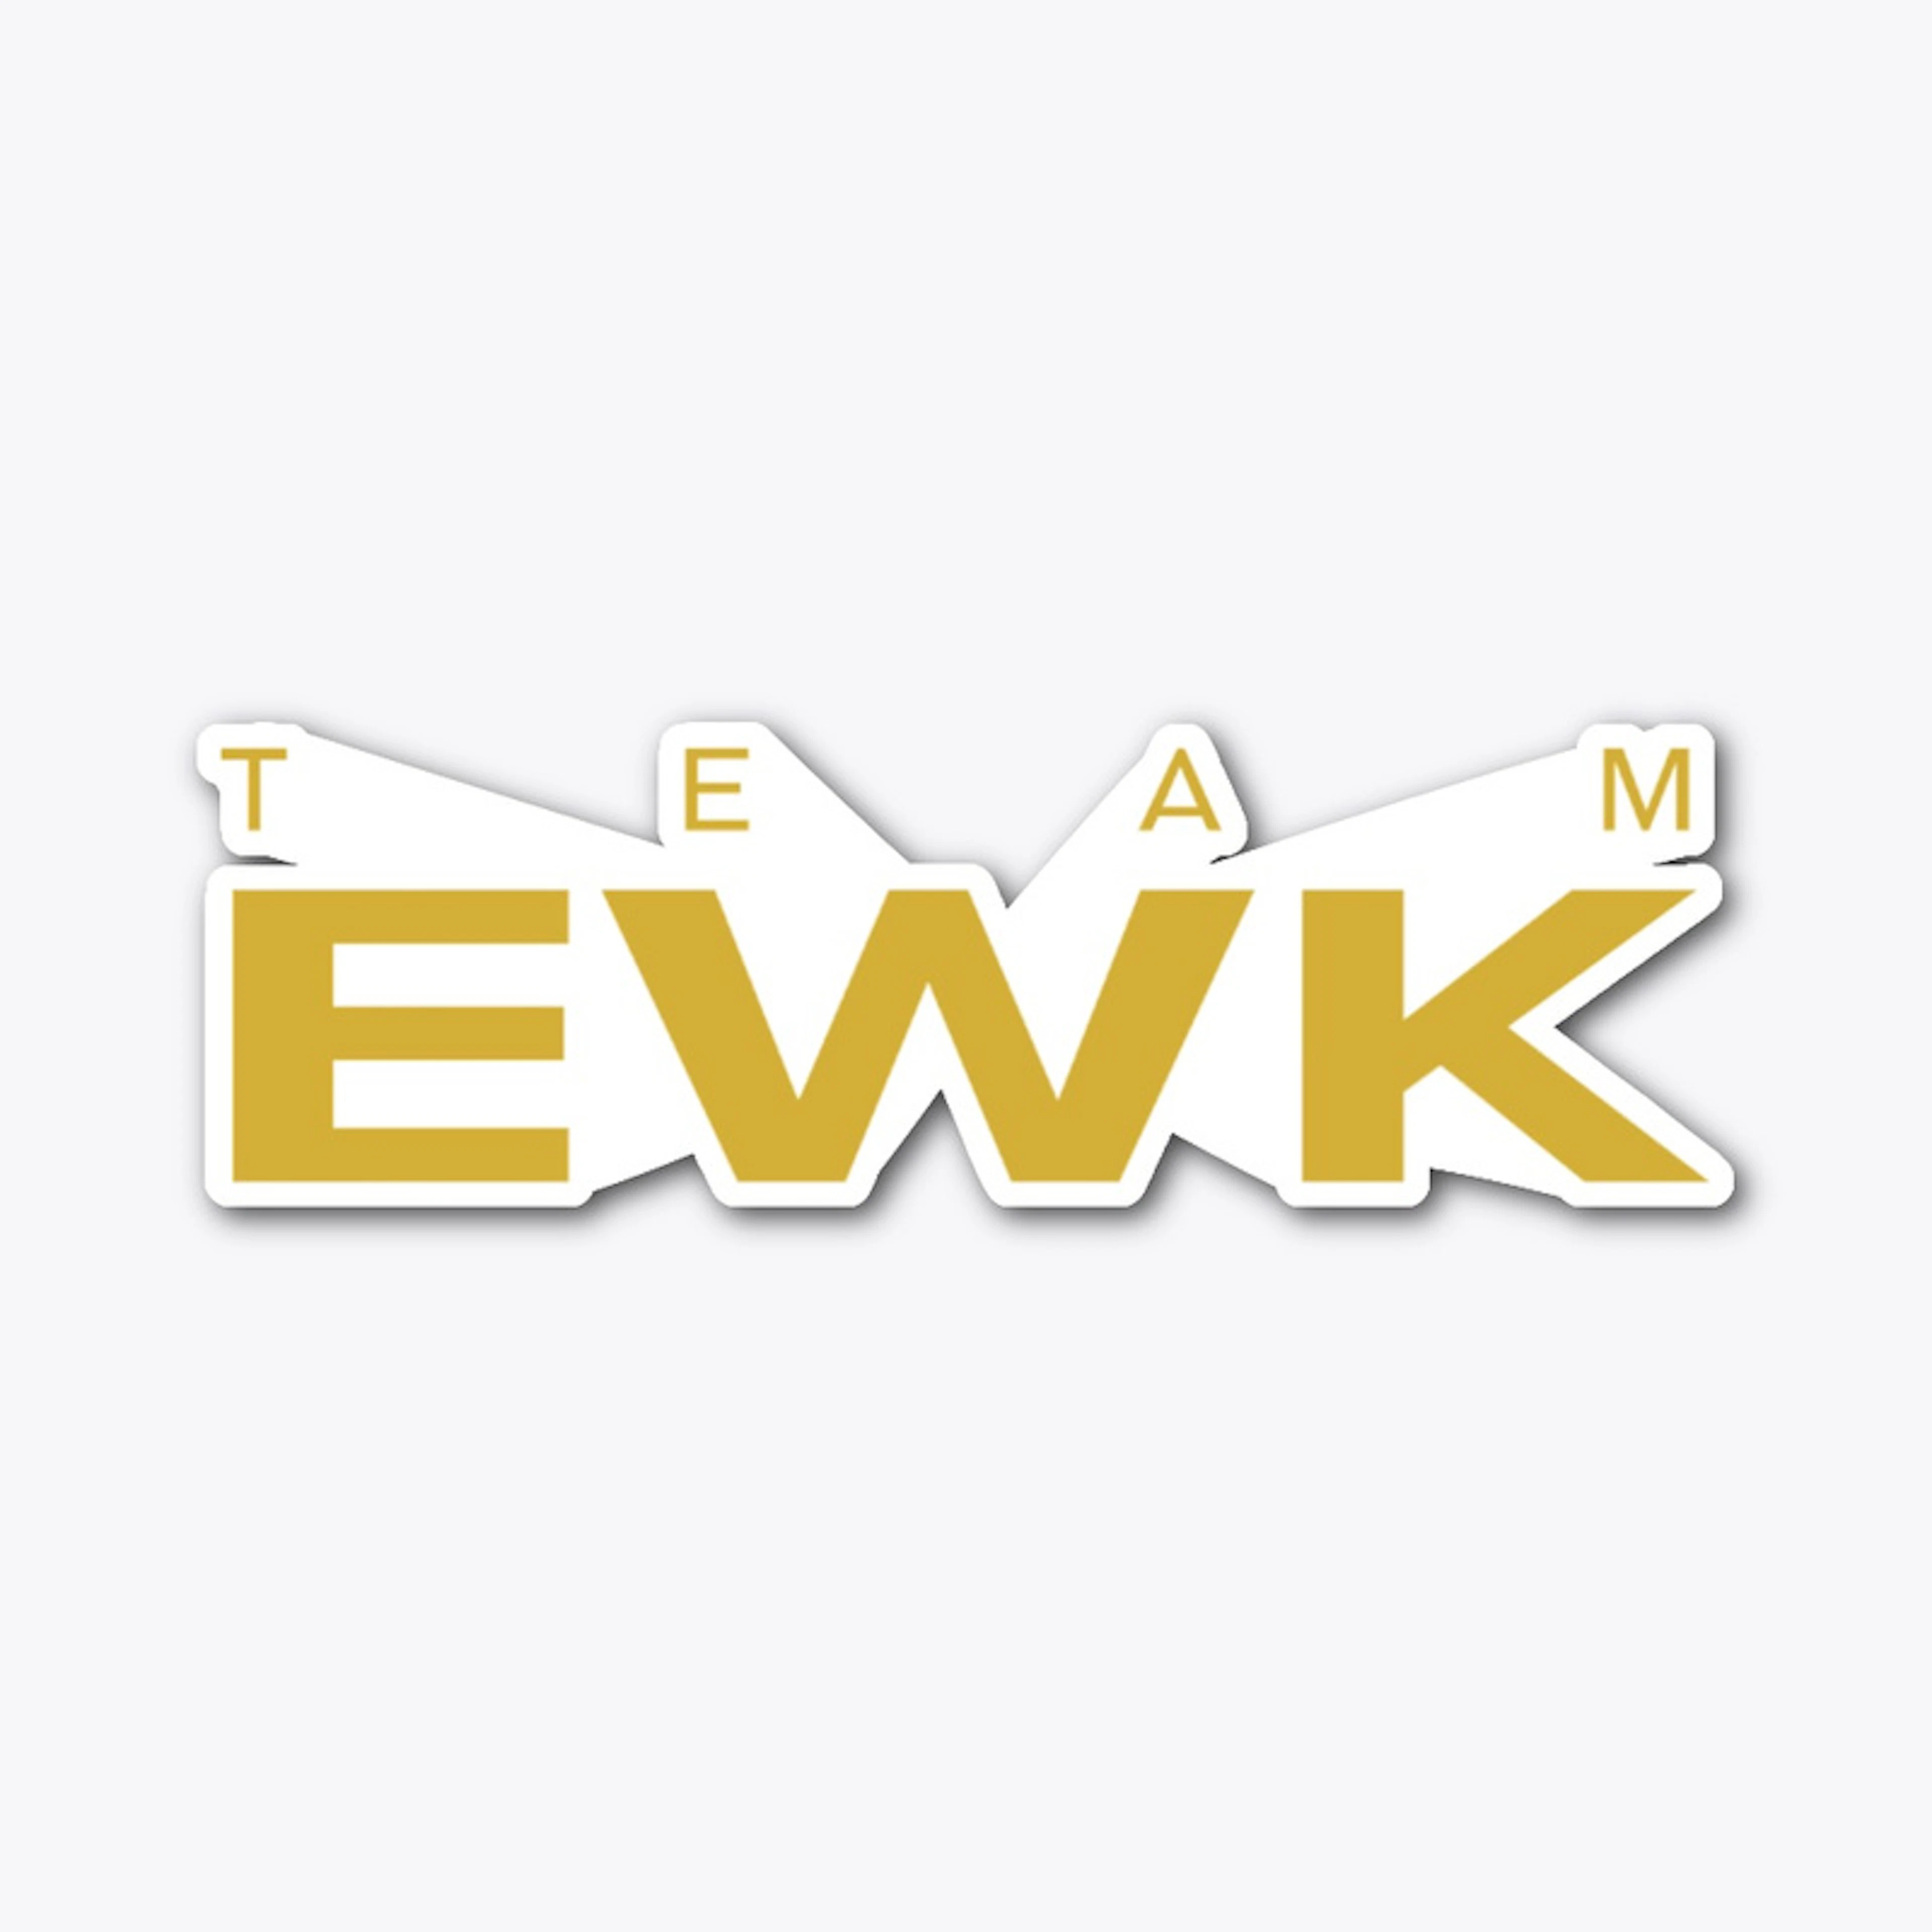 Team EWK